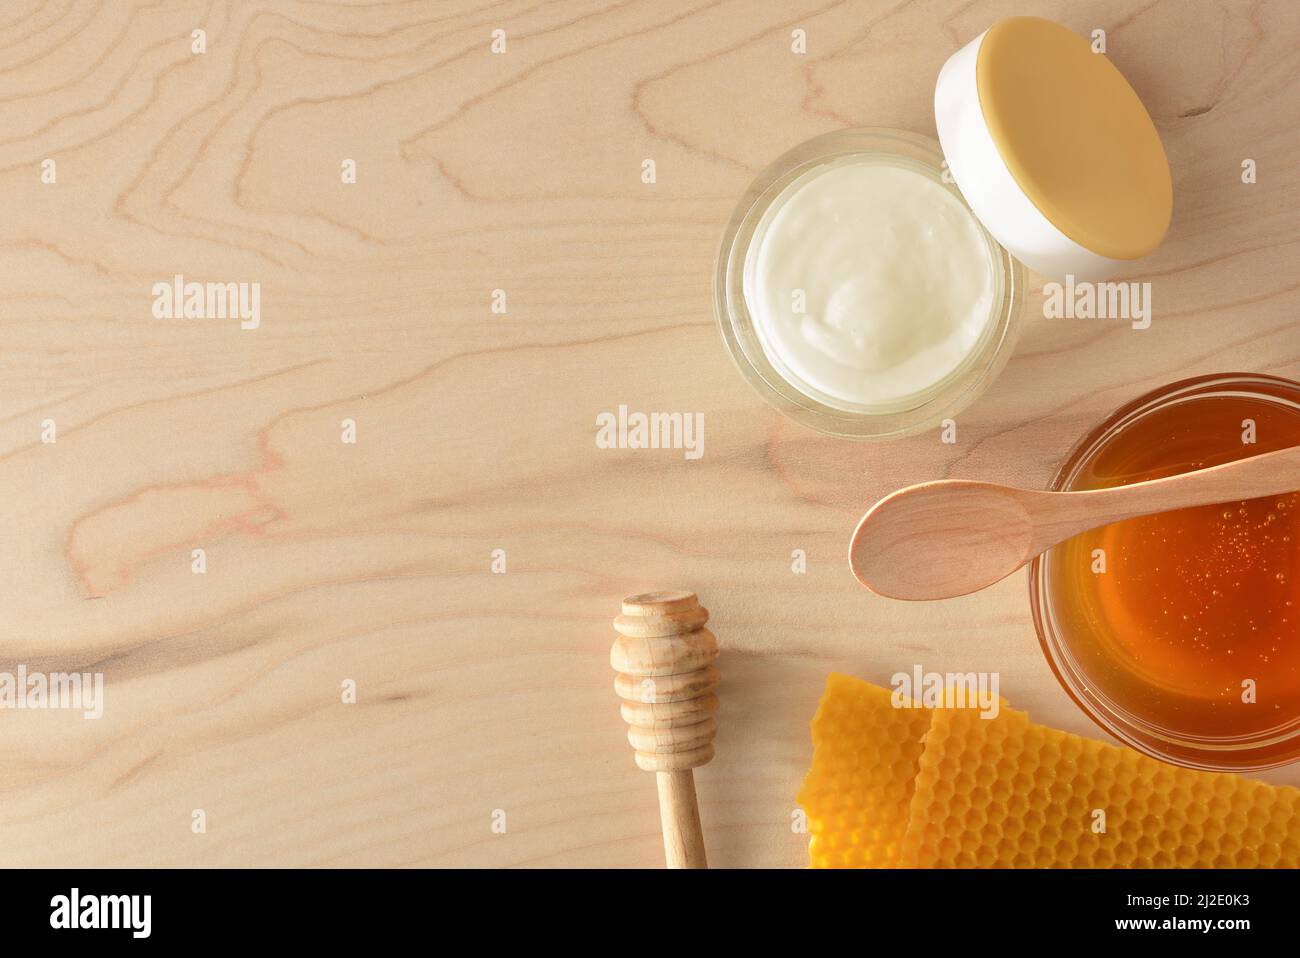 Crème hydratante pour les soins de la peau avec extraits de miel et rayons de miel sur une table en bois. Composition horizontale. Vue de dessus. Banque D'Images